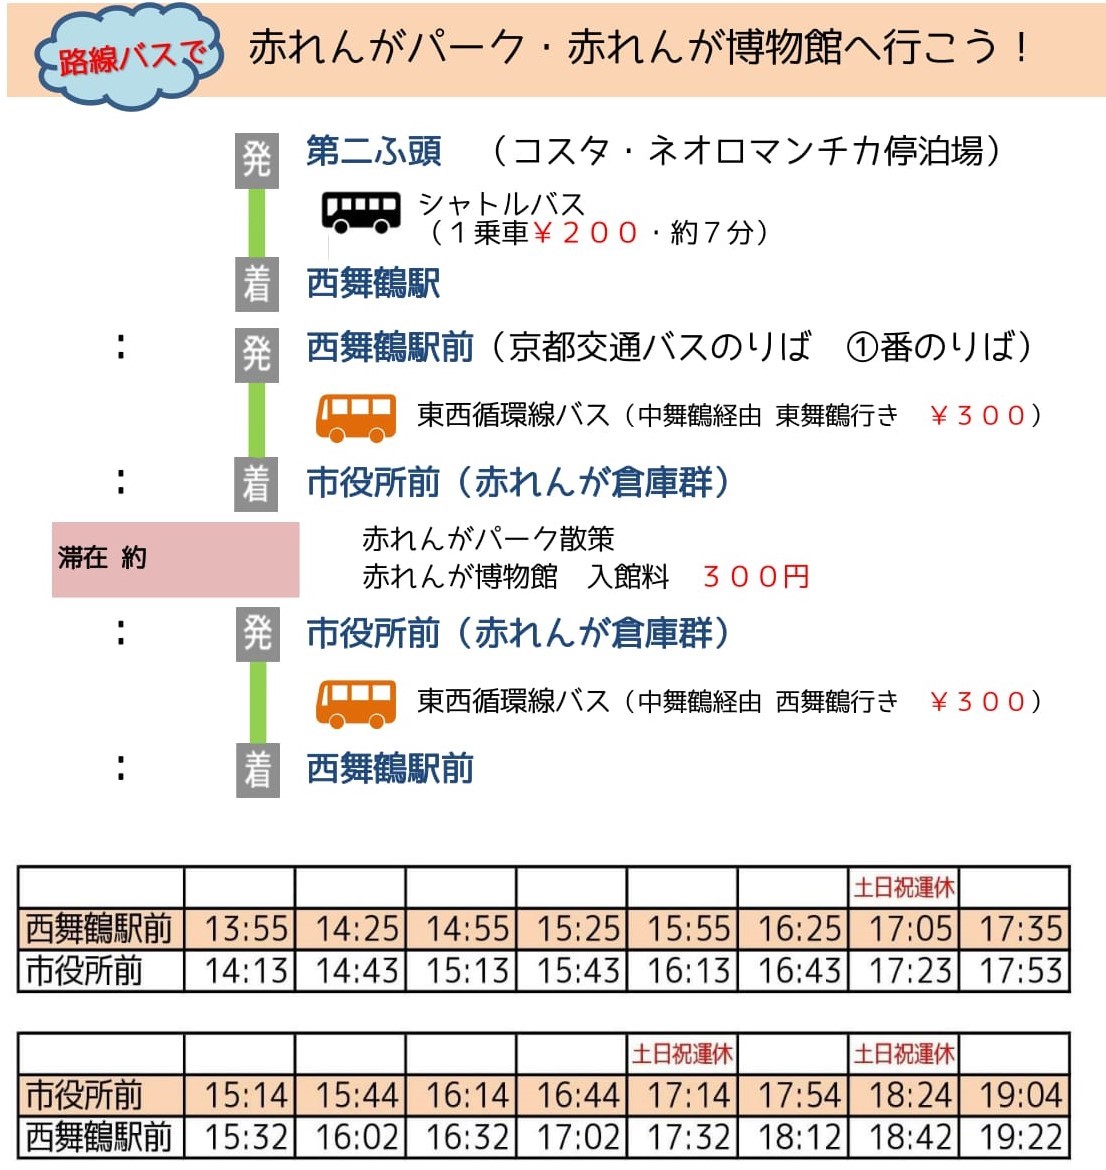 http://www.maizuru-kanko.net/event/img/%E8%B5%A4%E3%83%91%E3%83%BC%E3%81%AE%E3%81%BF-1.jpg